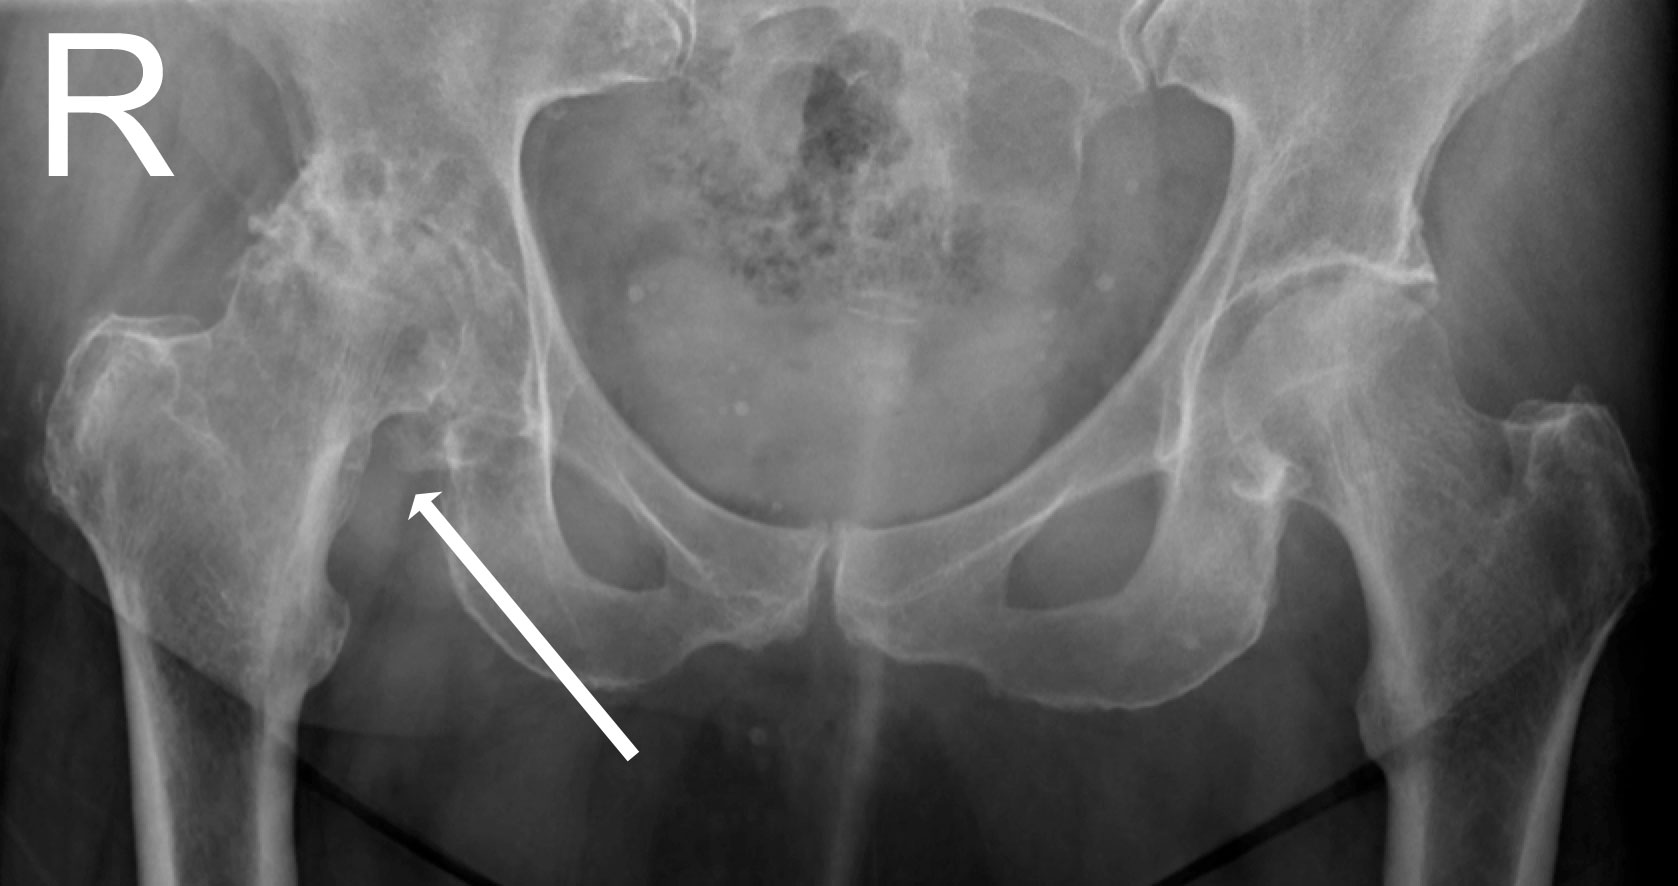 røntgen for at afklare hoftesmerter